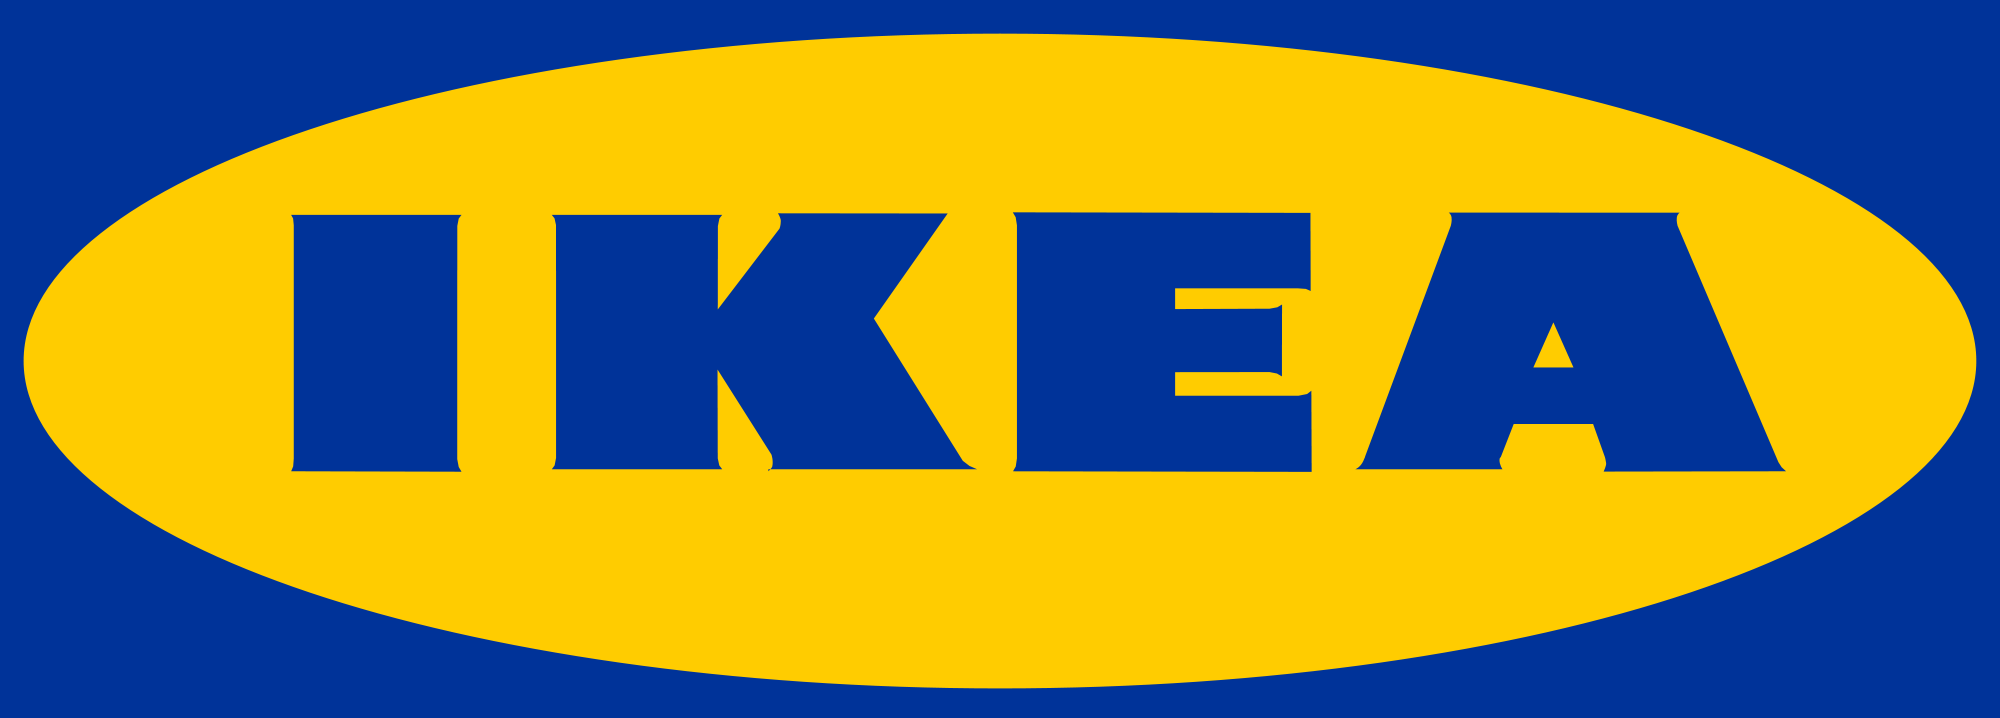 logo de la marque Ikea